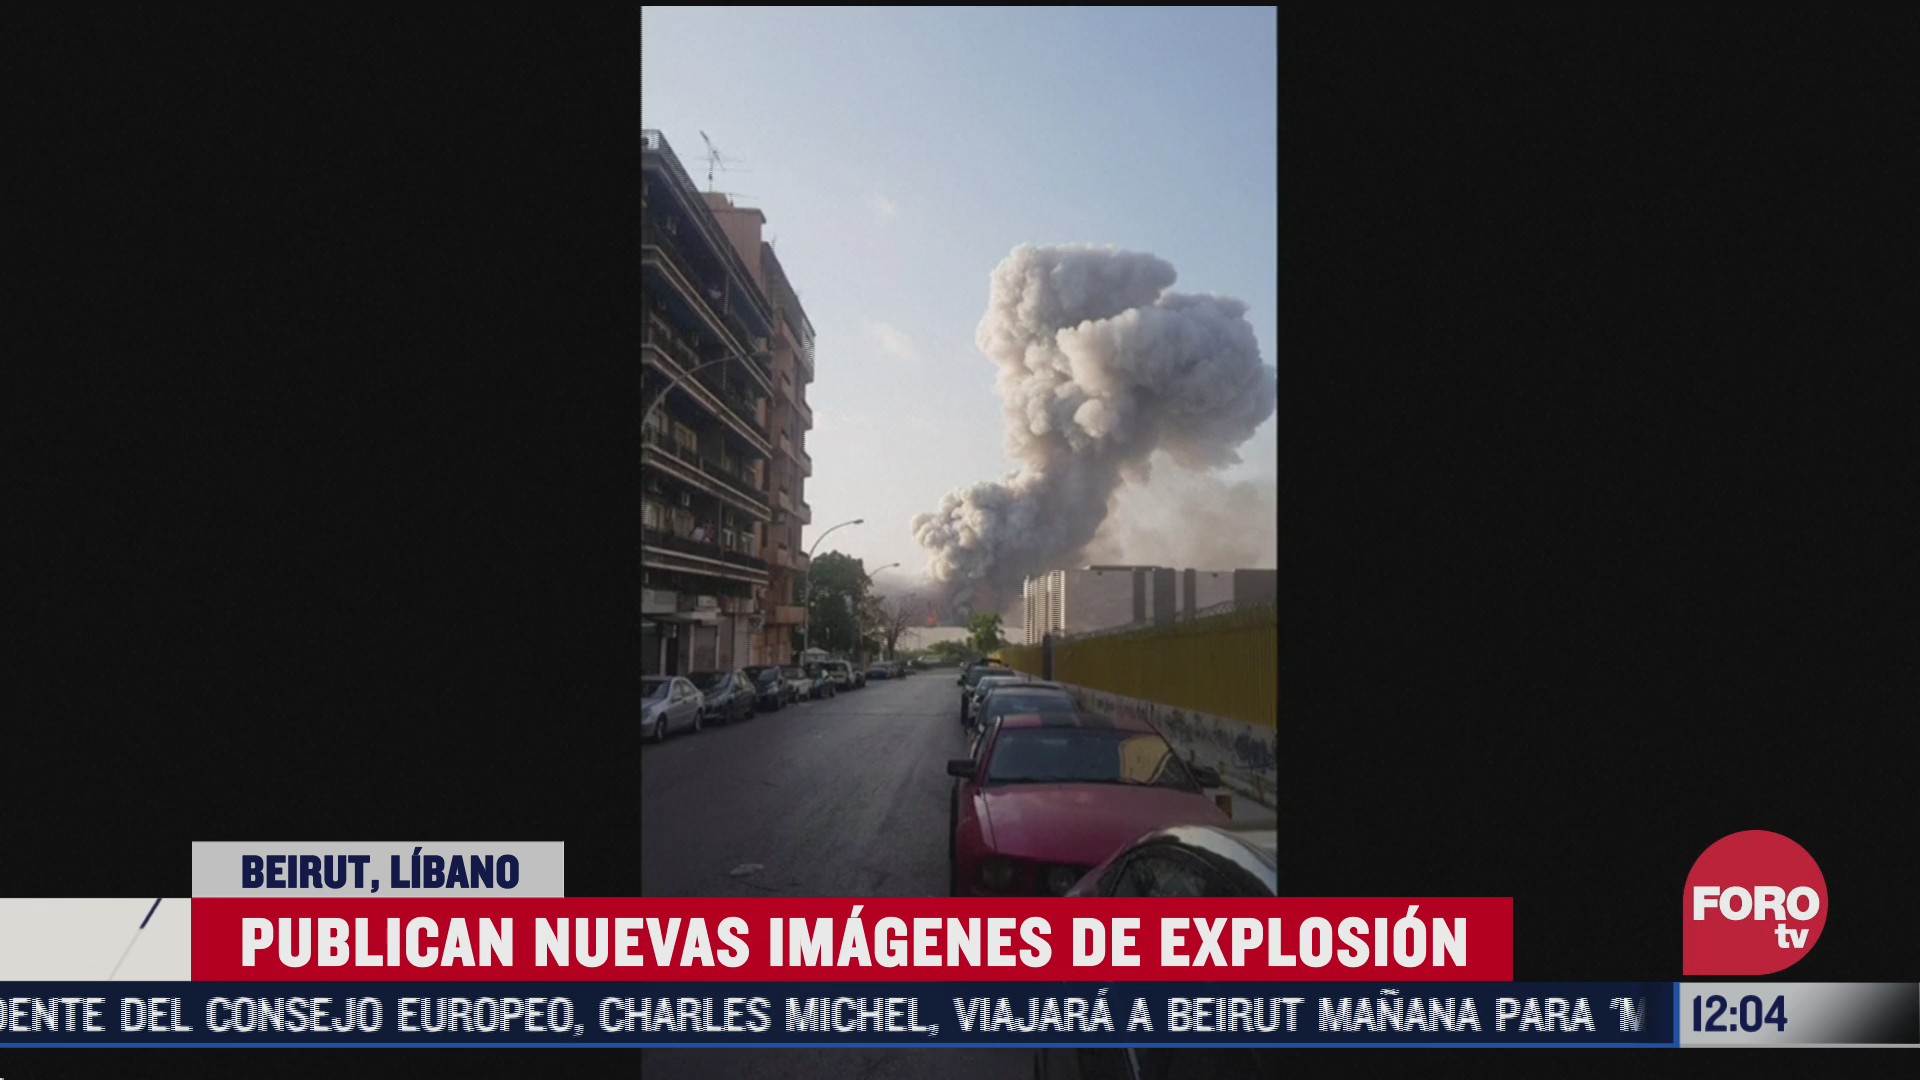 divulgan nuevo video de la explosion en beirut libano